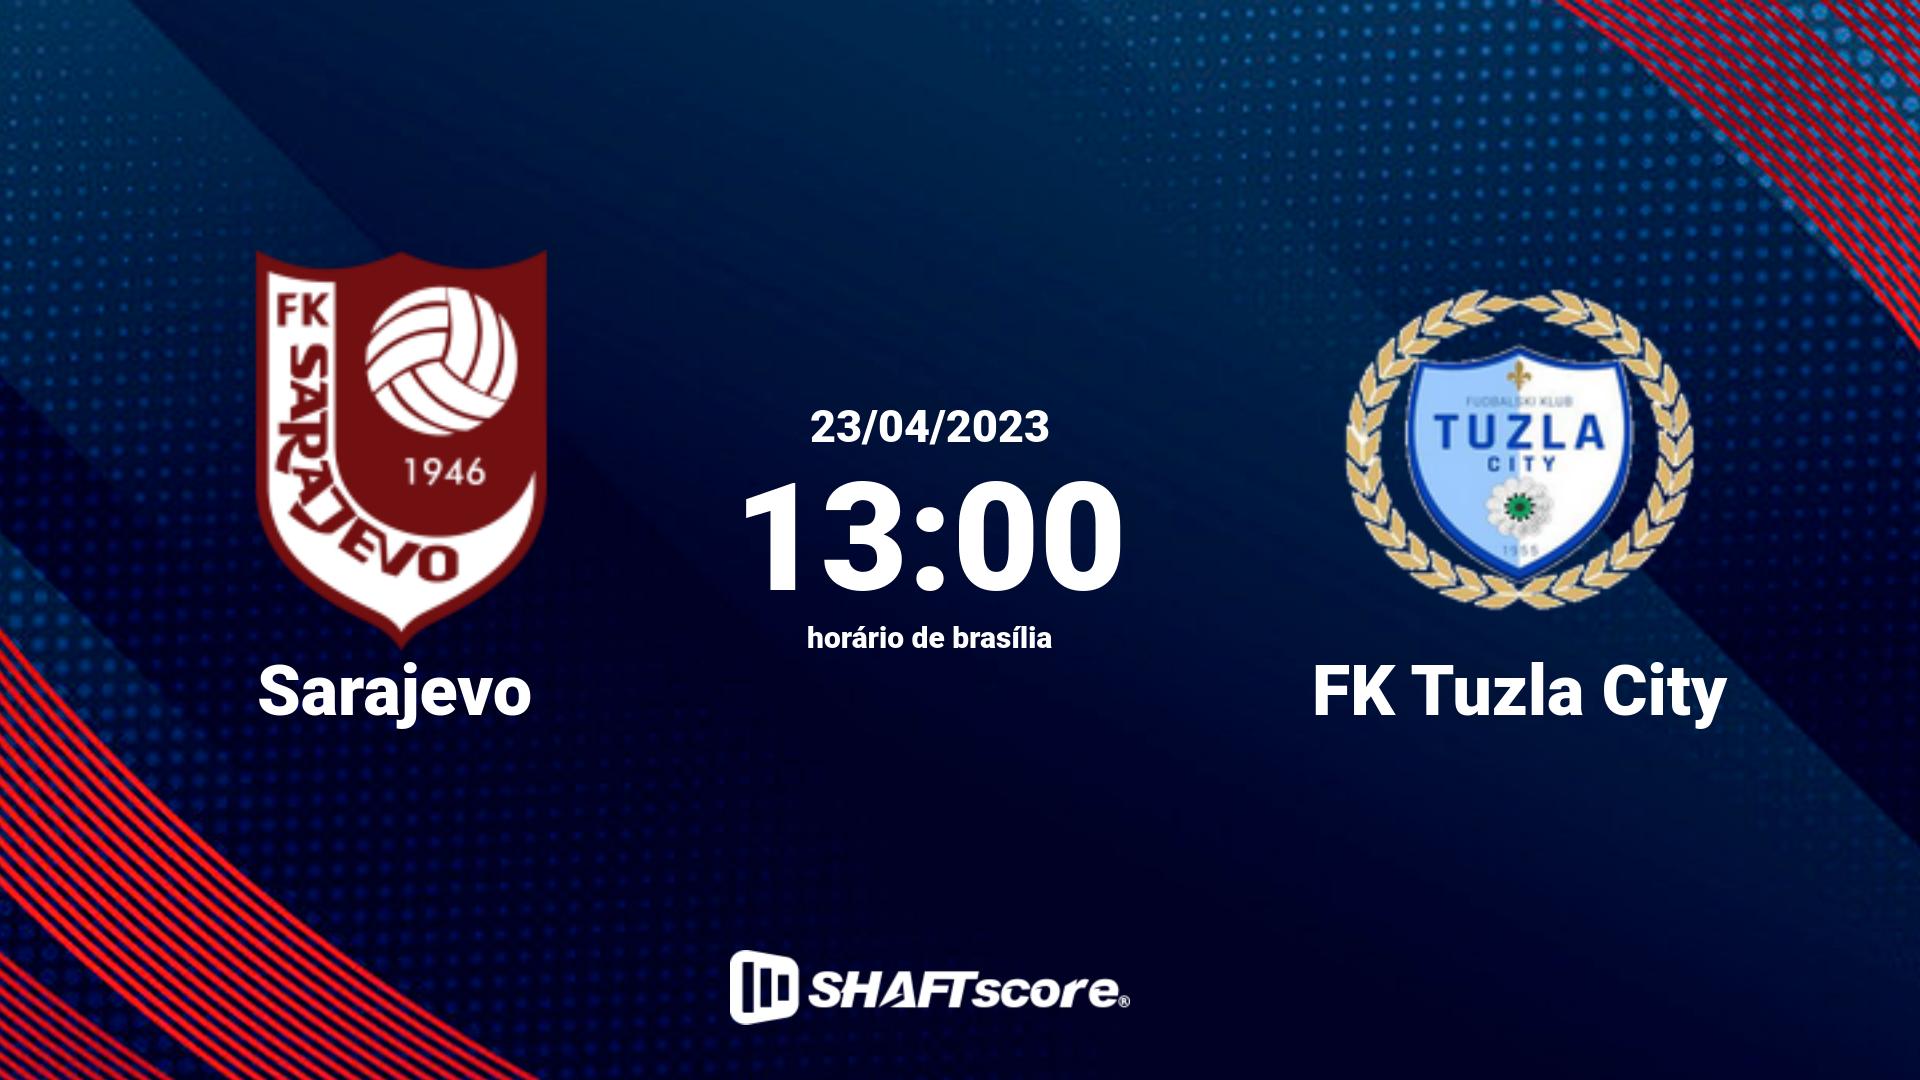 Estatísticas do jogo Sarajevo vs FK Tuzla City 23.04 13:00